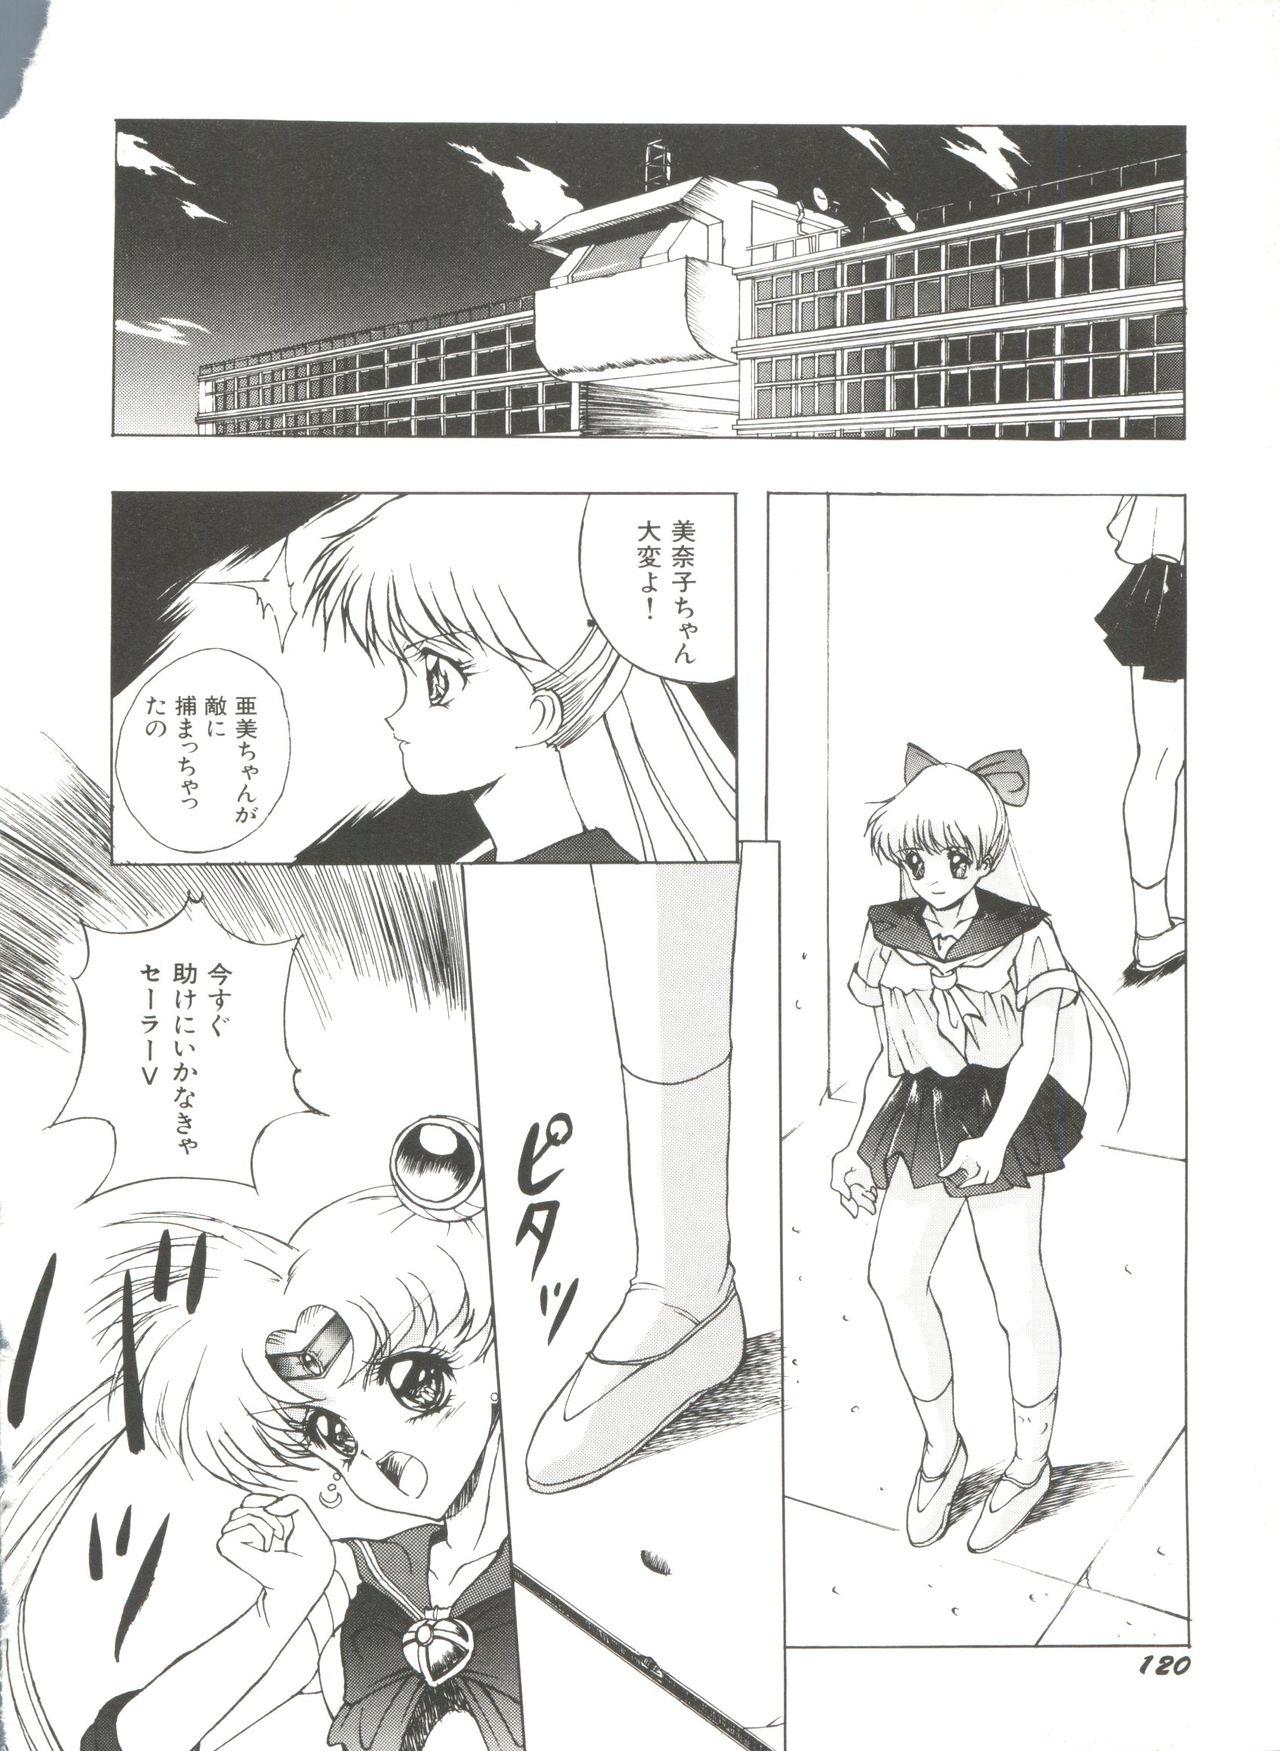 Bishoujo Doujinshi Anthology 10 - Moon Paradise 6 Tsuki no Rakuen 124